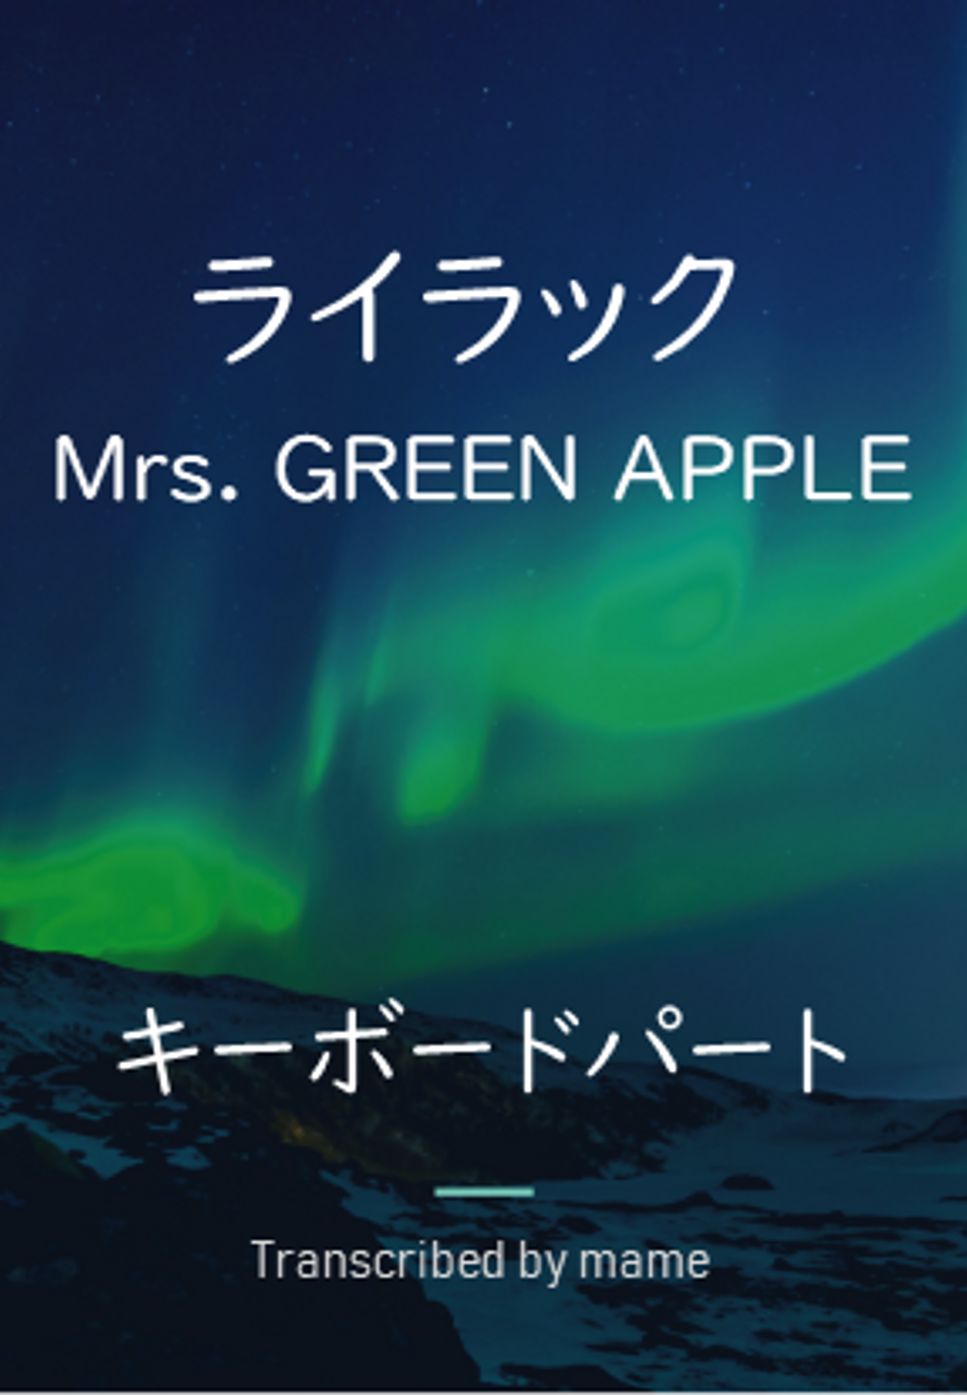 Mrs. GREEN APPLE - ライラック (キーボードパート) by mame